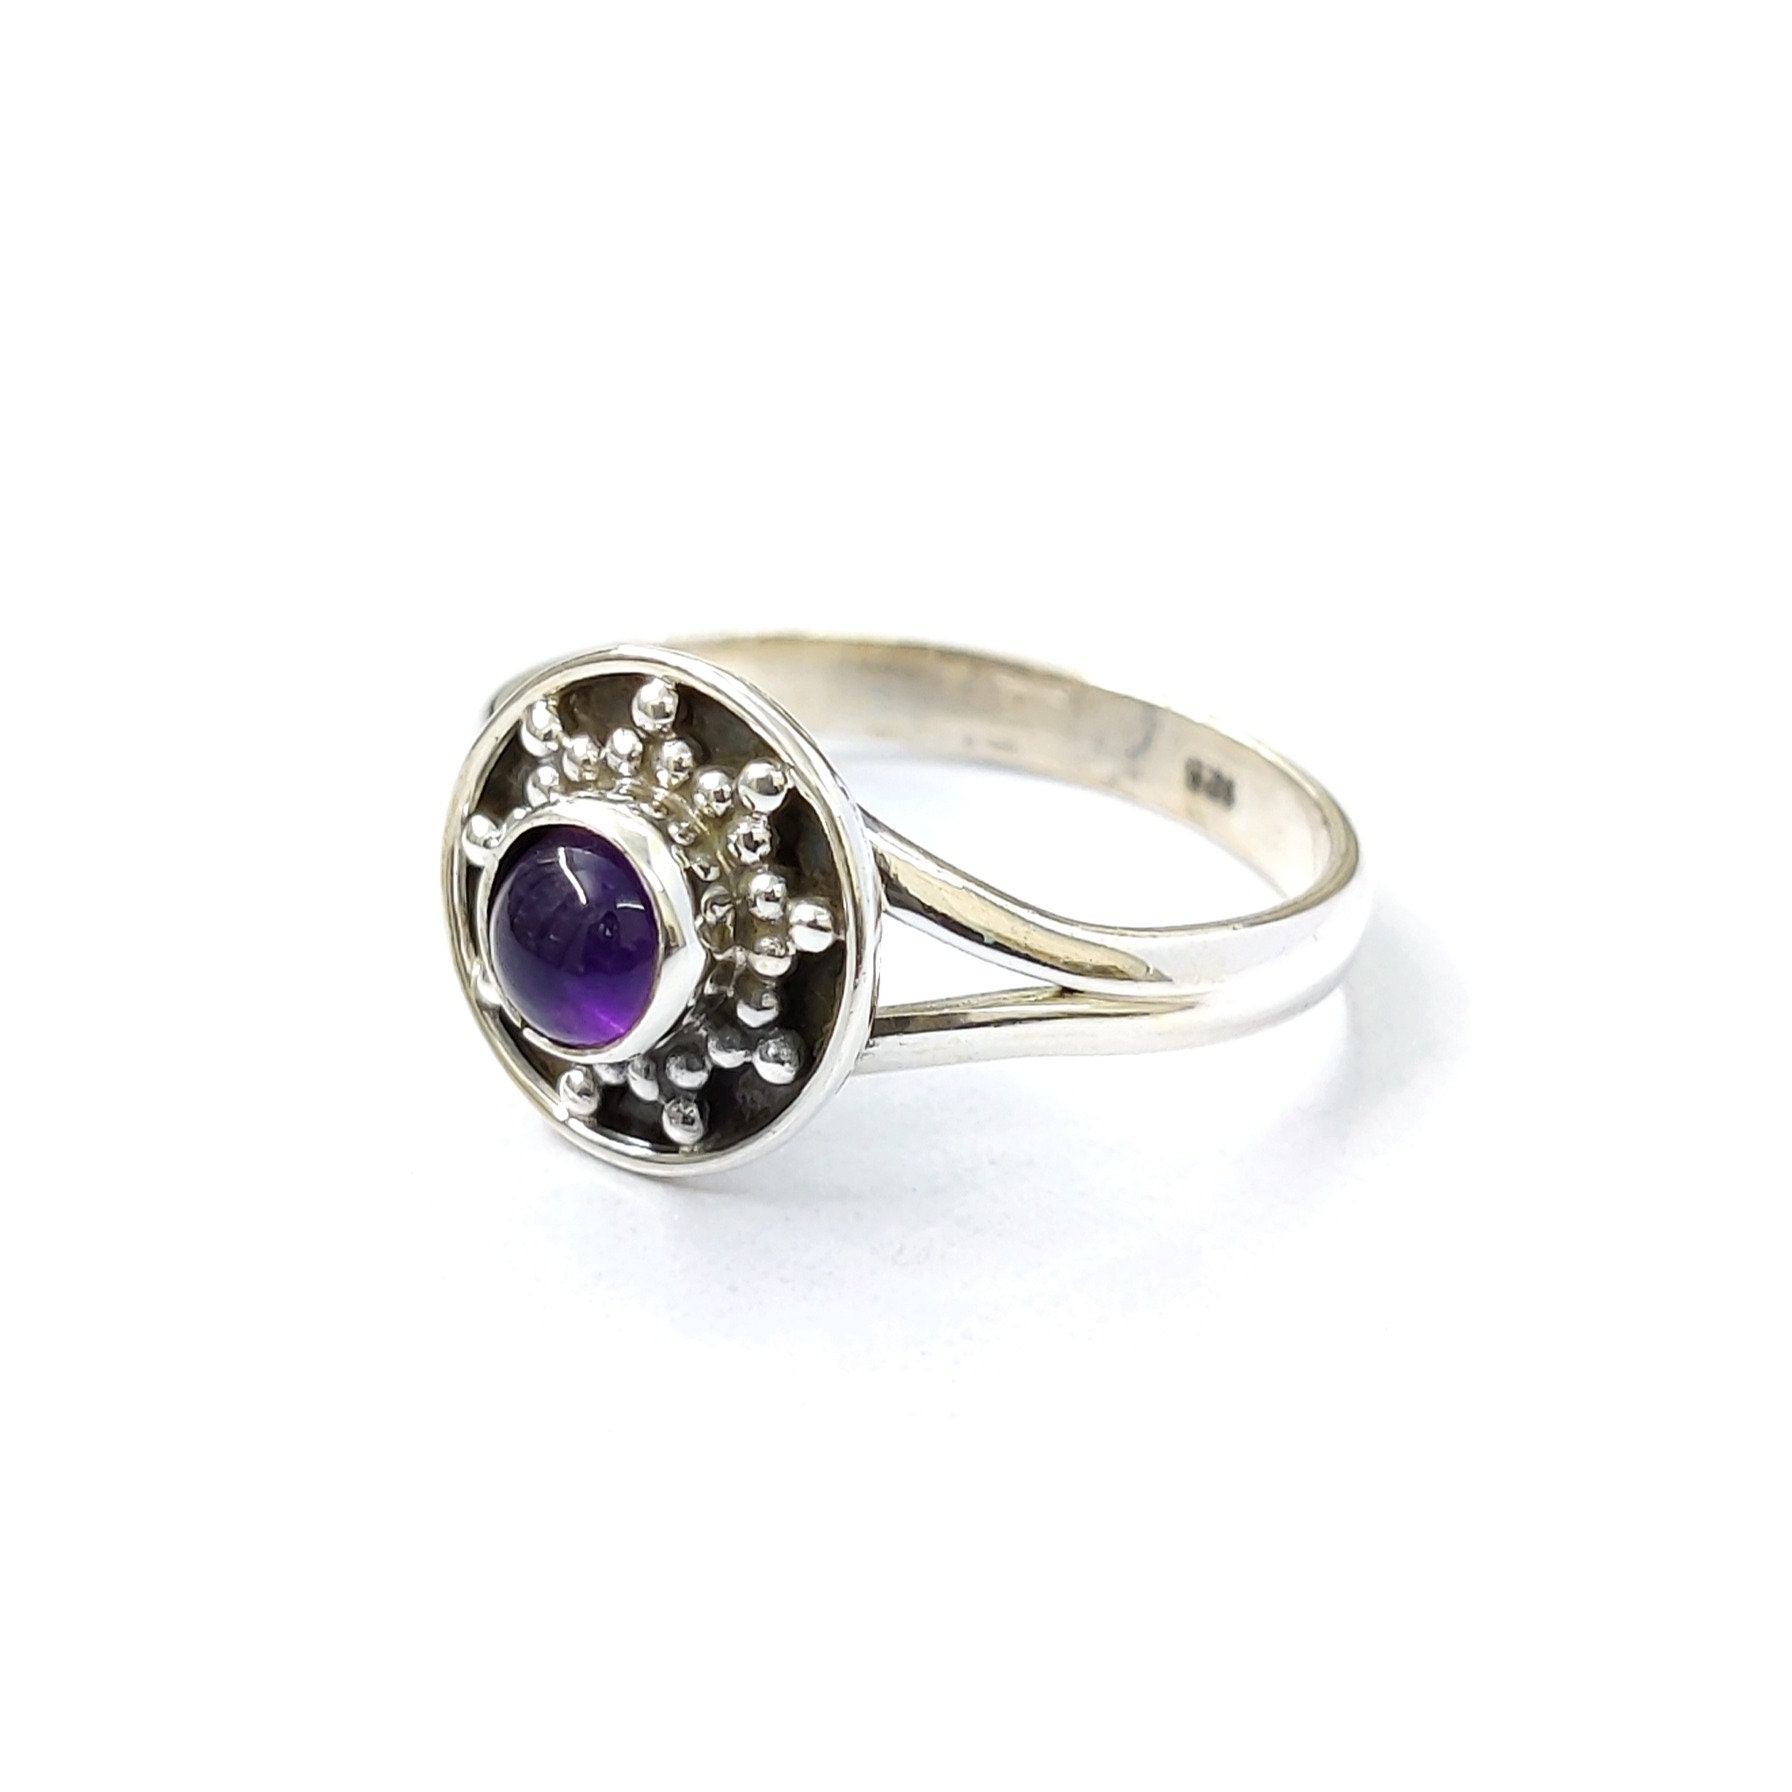 Natürlicher Amethyst Ring, Handgemachter Zarte Hochzeitsgeschenk, Birthstone Geschenk Für Sie, Schöne Silber Ring von Moonstoneringstore